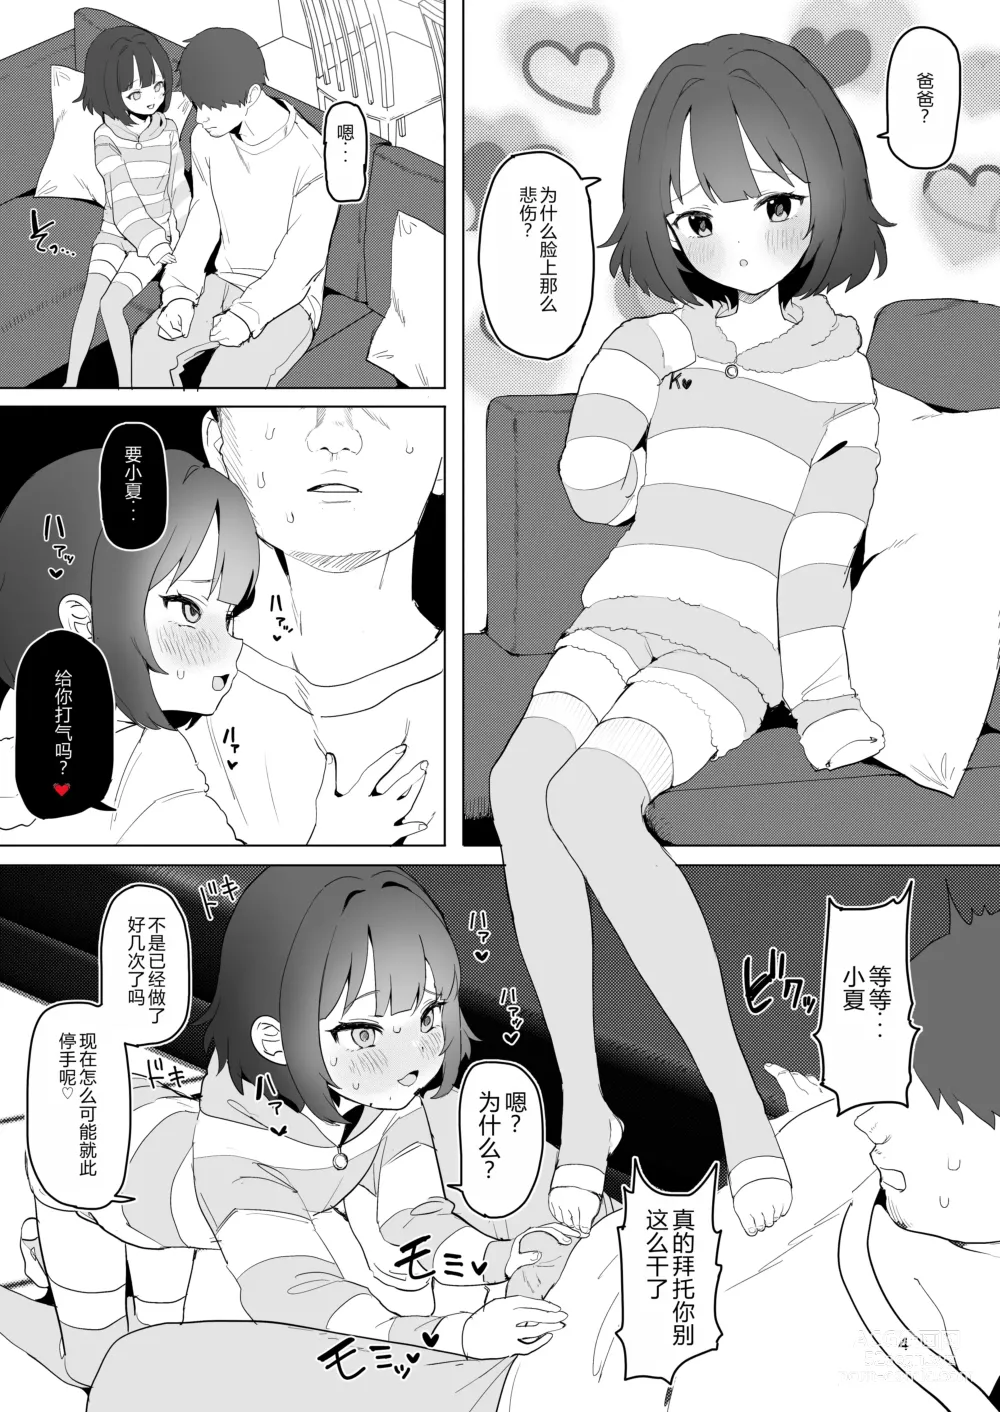 Page 4 of doujinshi Hitokuchi Echi Manga 2